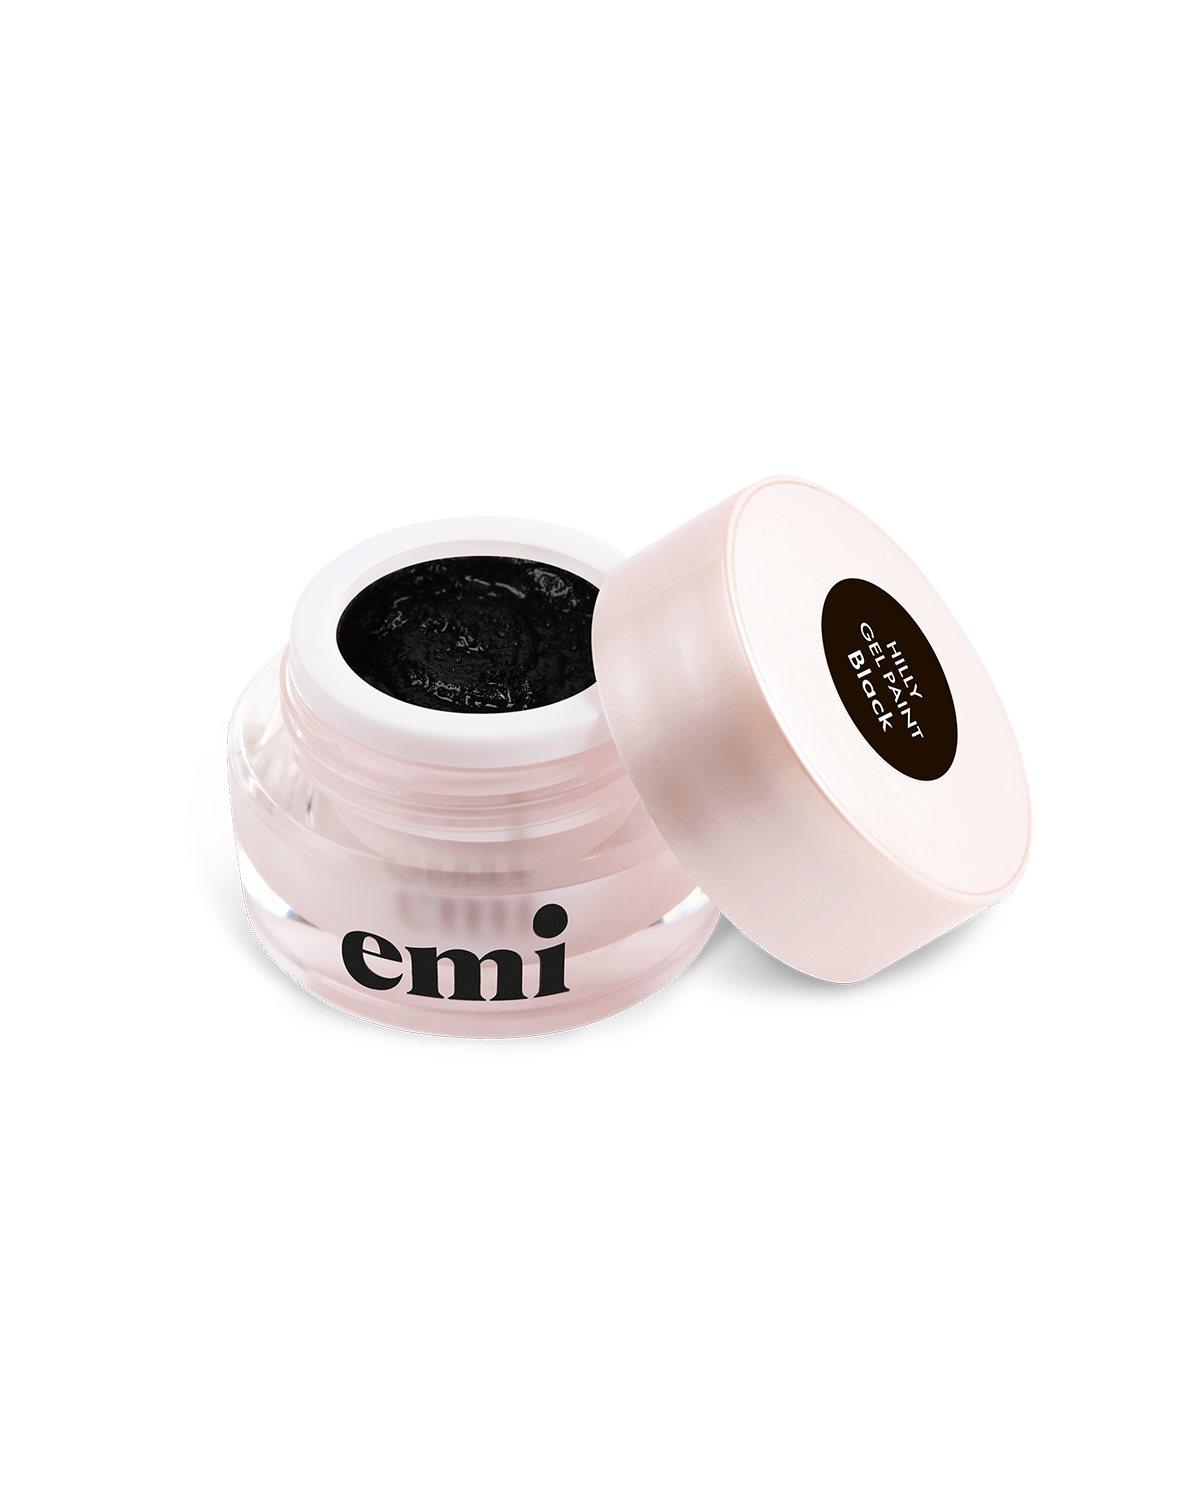 Гель для дизайна ногтей Emi Hilly gel paint №001 Black 5 г узоры для вязания крючком красивые мотивы и техника моделирования для дизайна стильных вязаных вещей